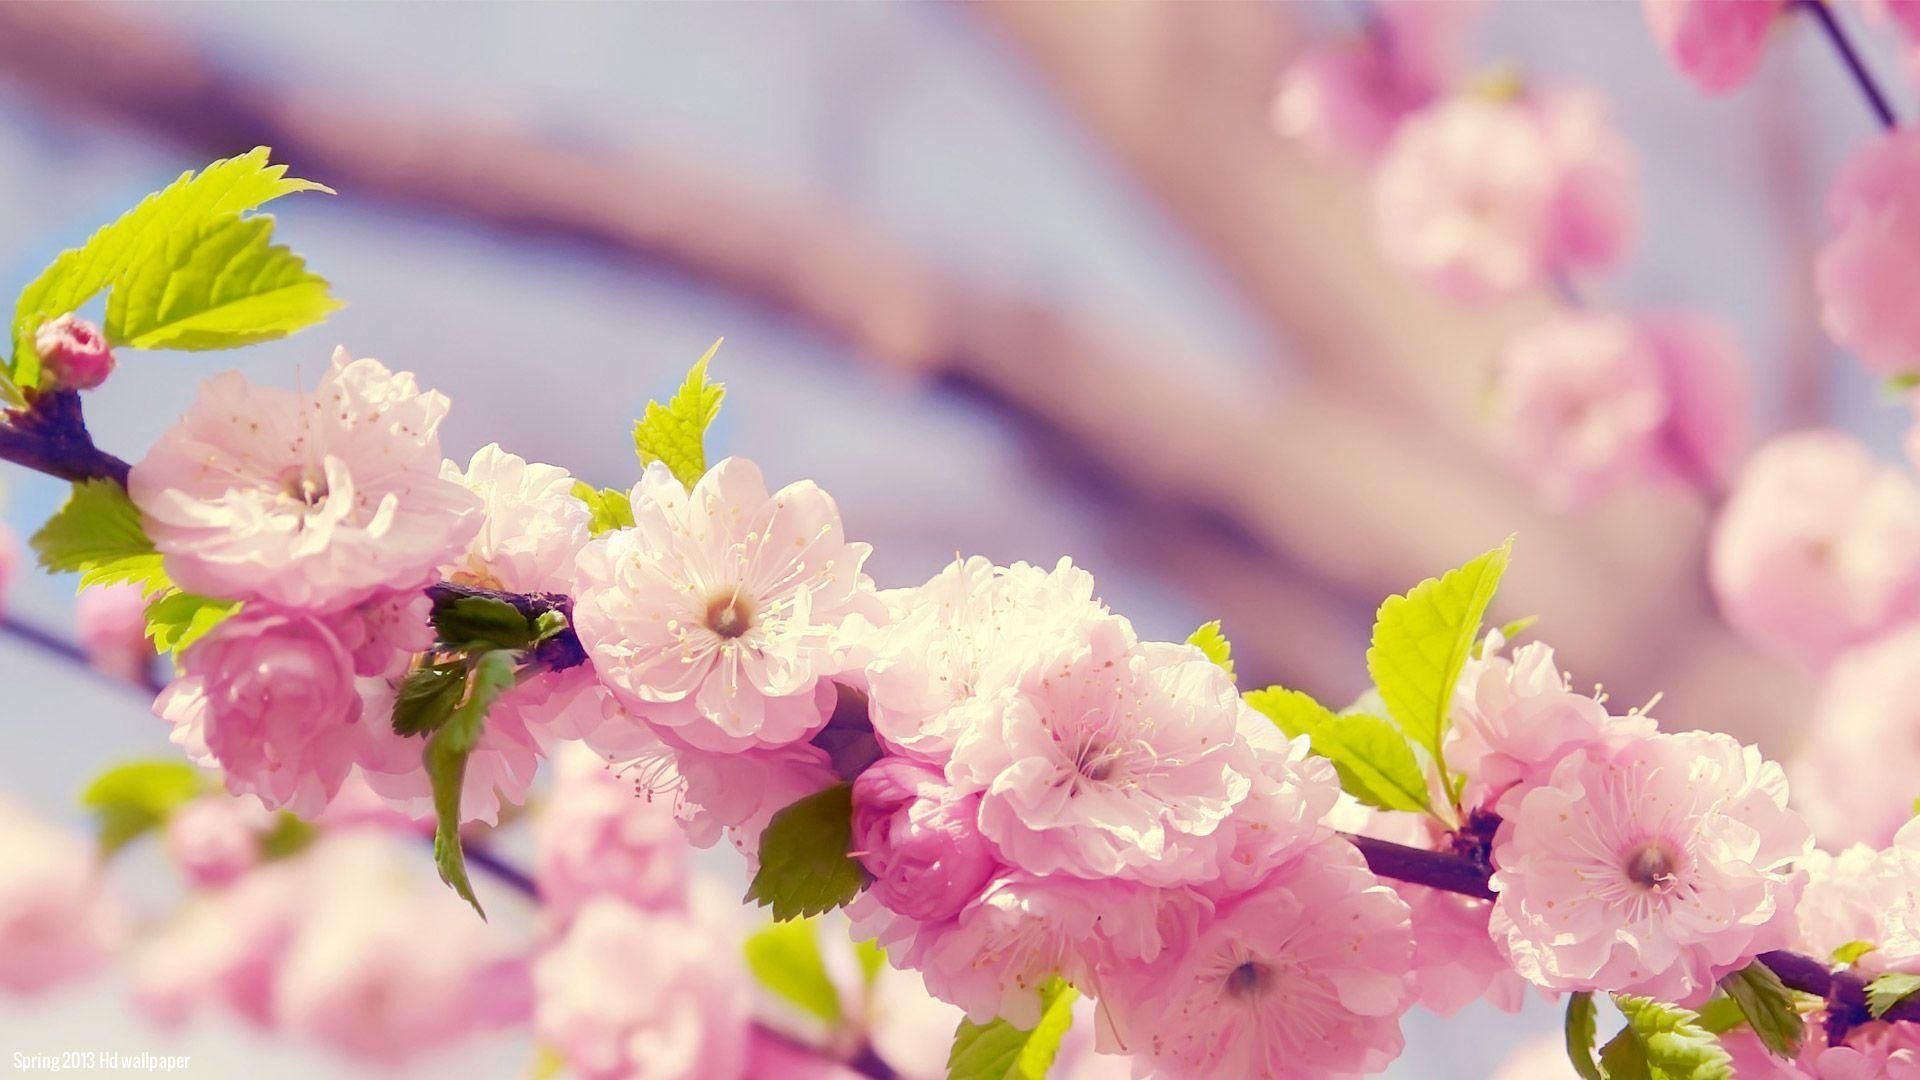 عکس رایگان شکوفه های بهاری زیبا